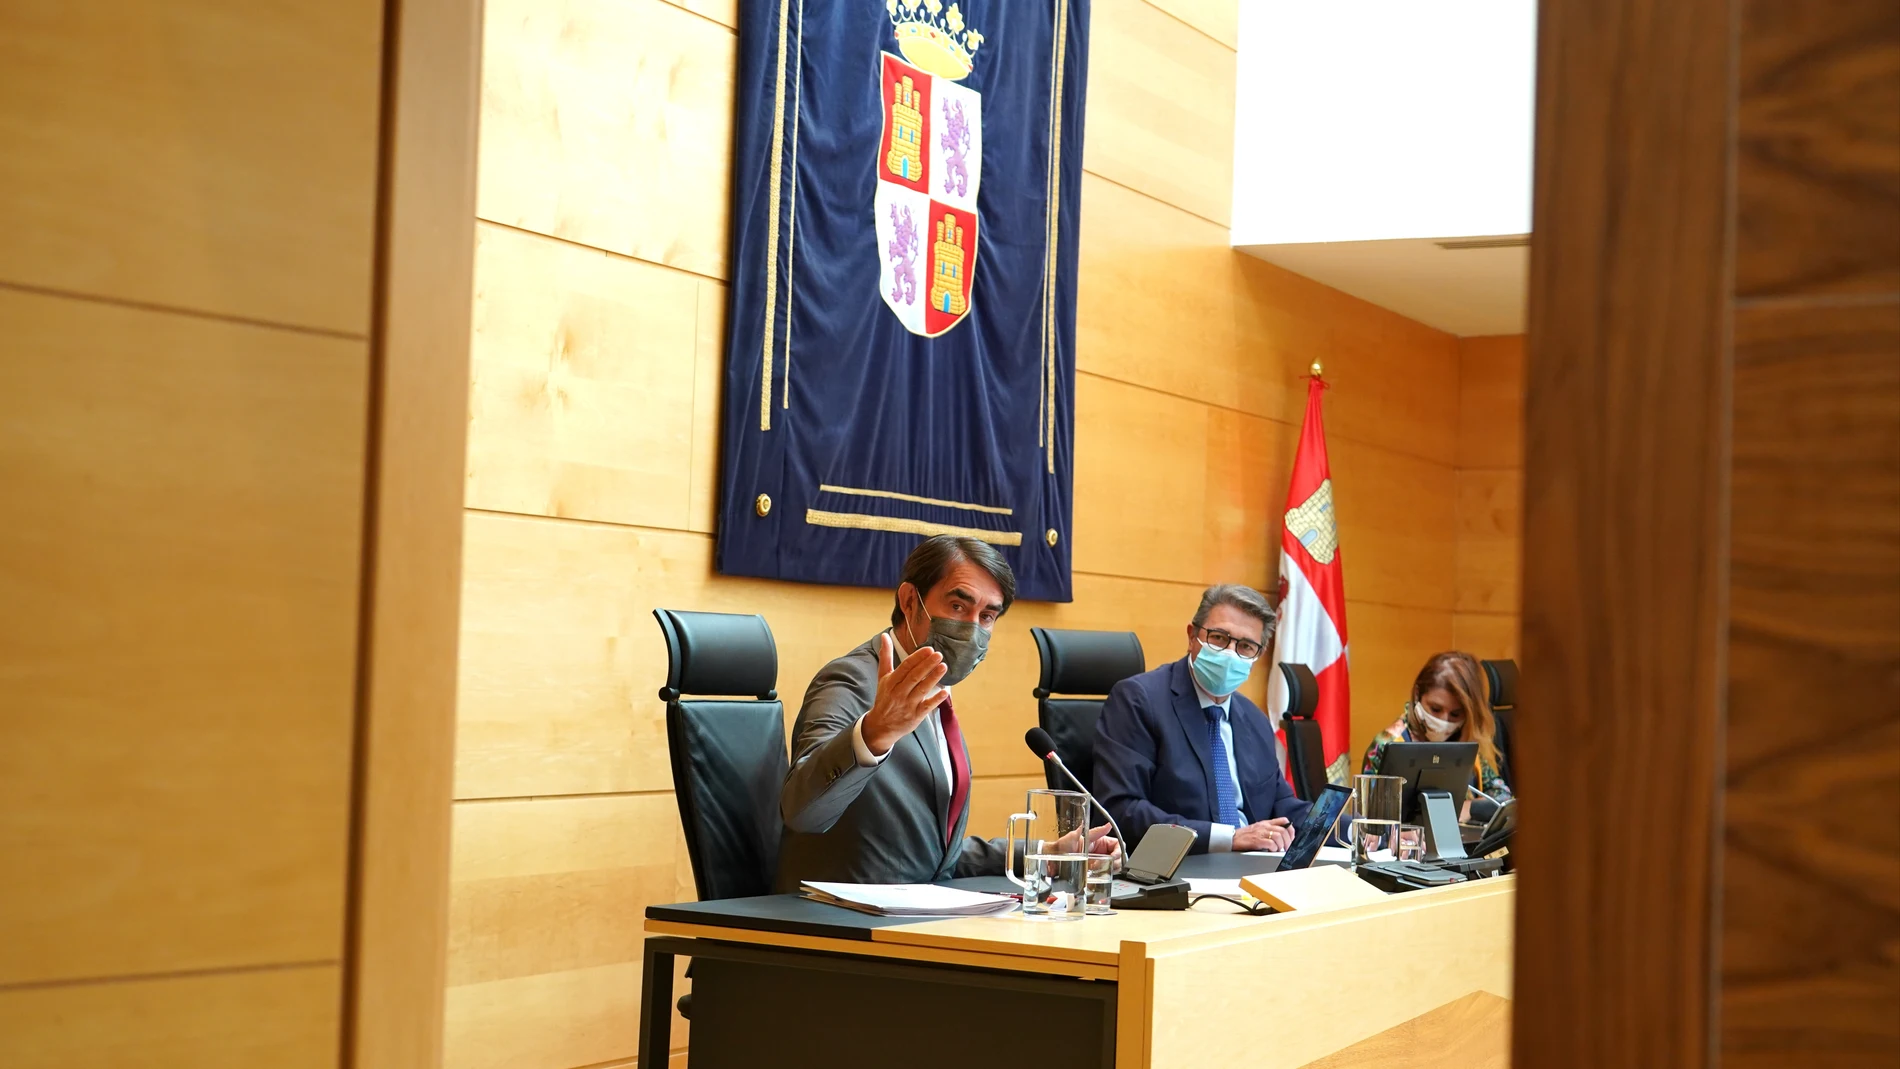 El consejero de Fomento y Medio Ambiente, Juan Carlos Suárez-Quiñones, comparece, a petición propia, en la Comisión de Fomento y Medio Ambiente para analizar el grado de cumplimiento de los objetivos de su departamento para la legislatura